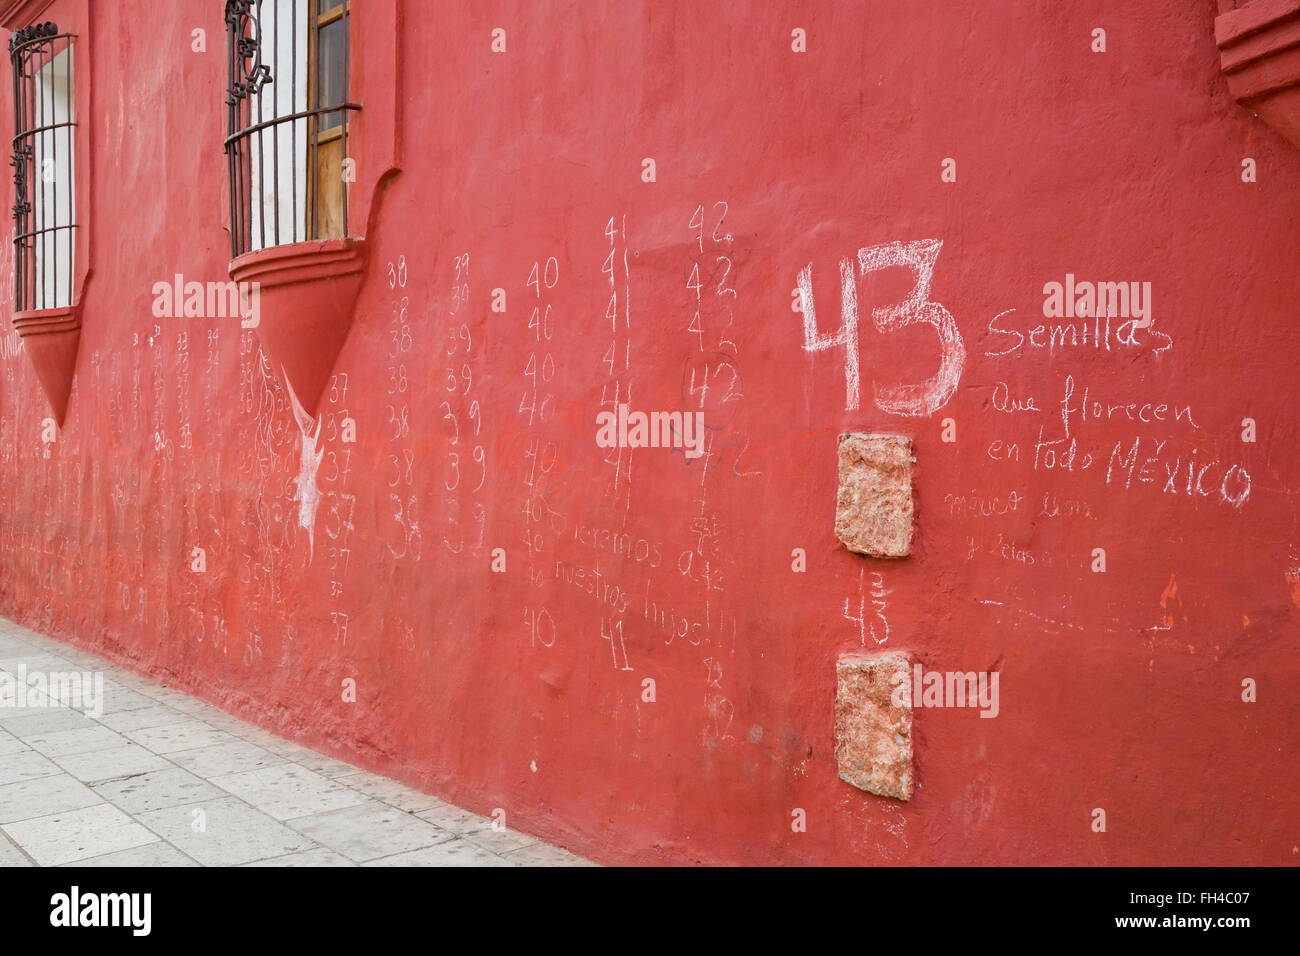 Oaxaca, Mexique - Un Graffiti sur un mur se souvient de l'enseignement 43 élèves qui ont été enlevés et assassinés, semble-t-il. Banque D'Images